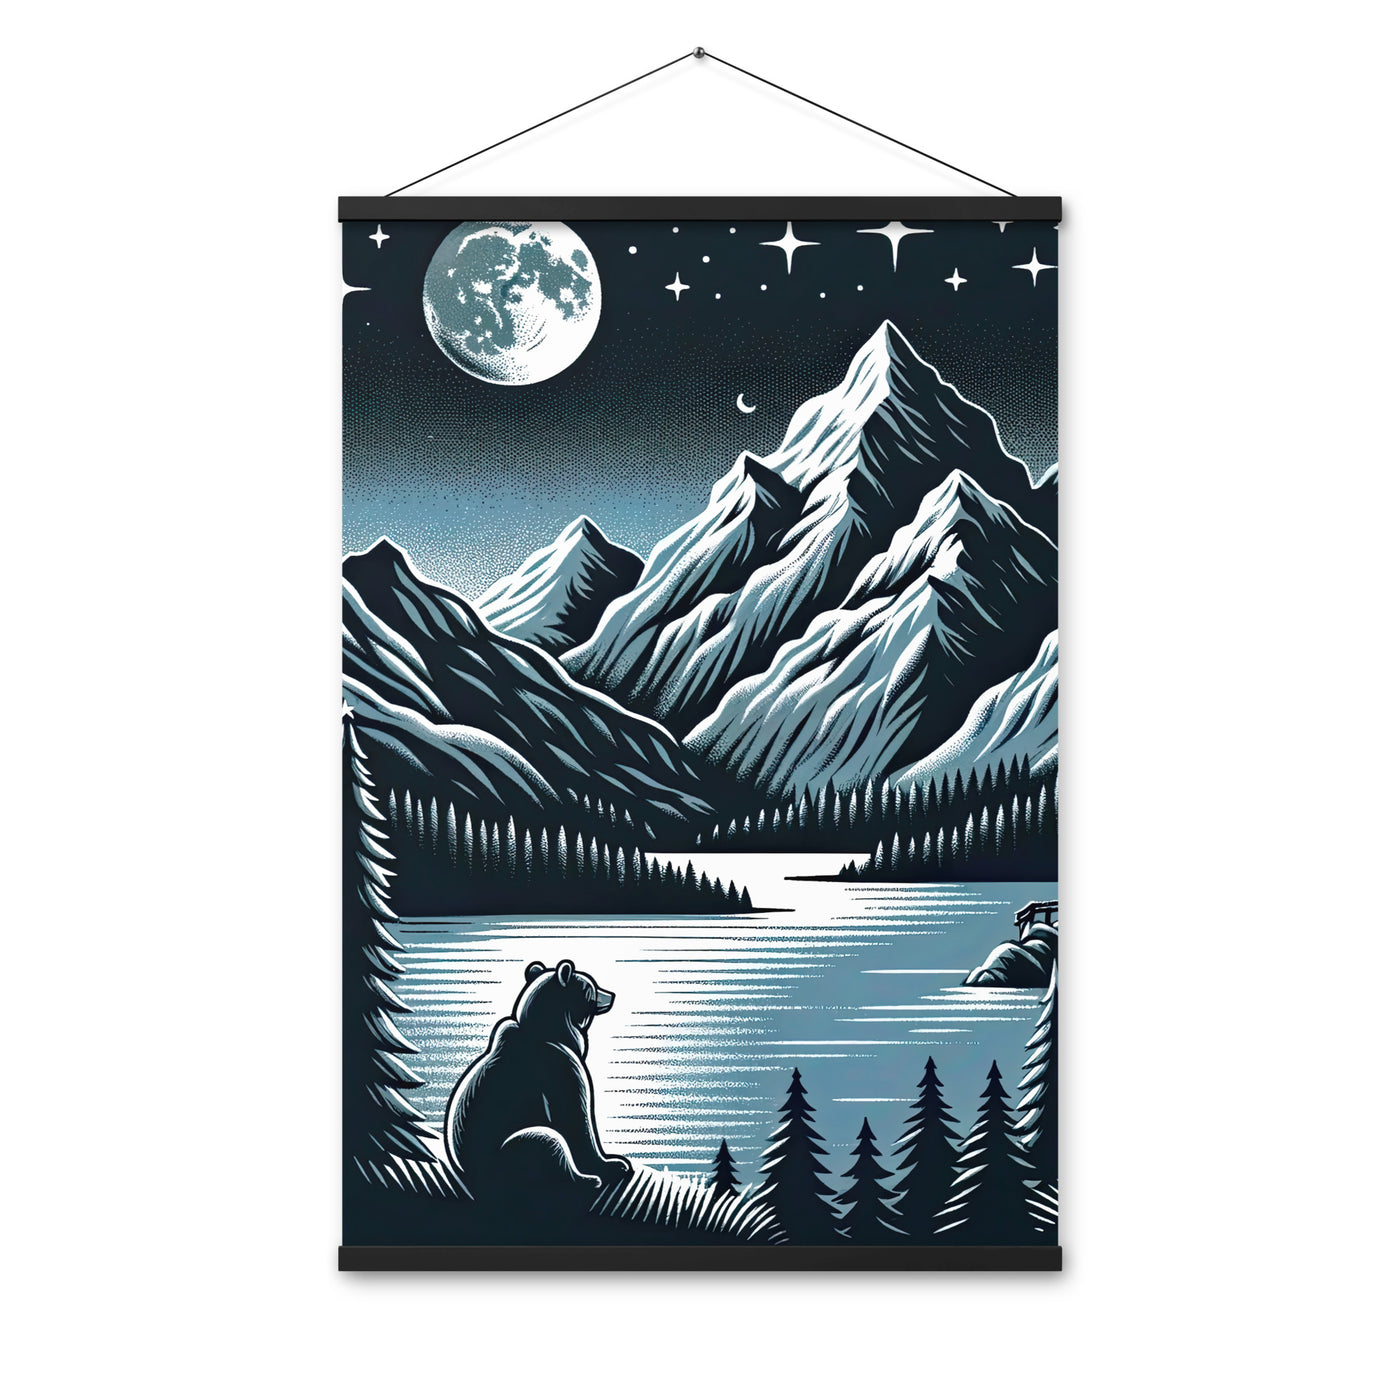 Bär in Alpen-Mondnacht, silberne Berge, schimmernde Seen - Premium Poster mit Aufhängung camping xxx yyy zzz 61 x 91.4 cm